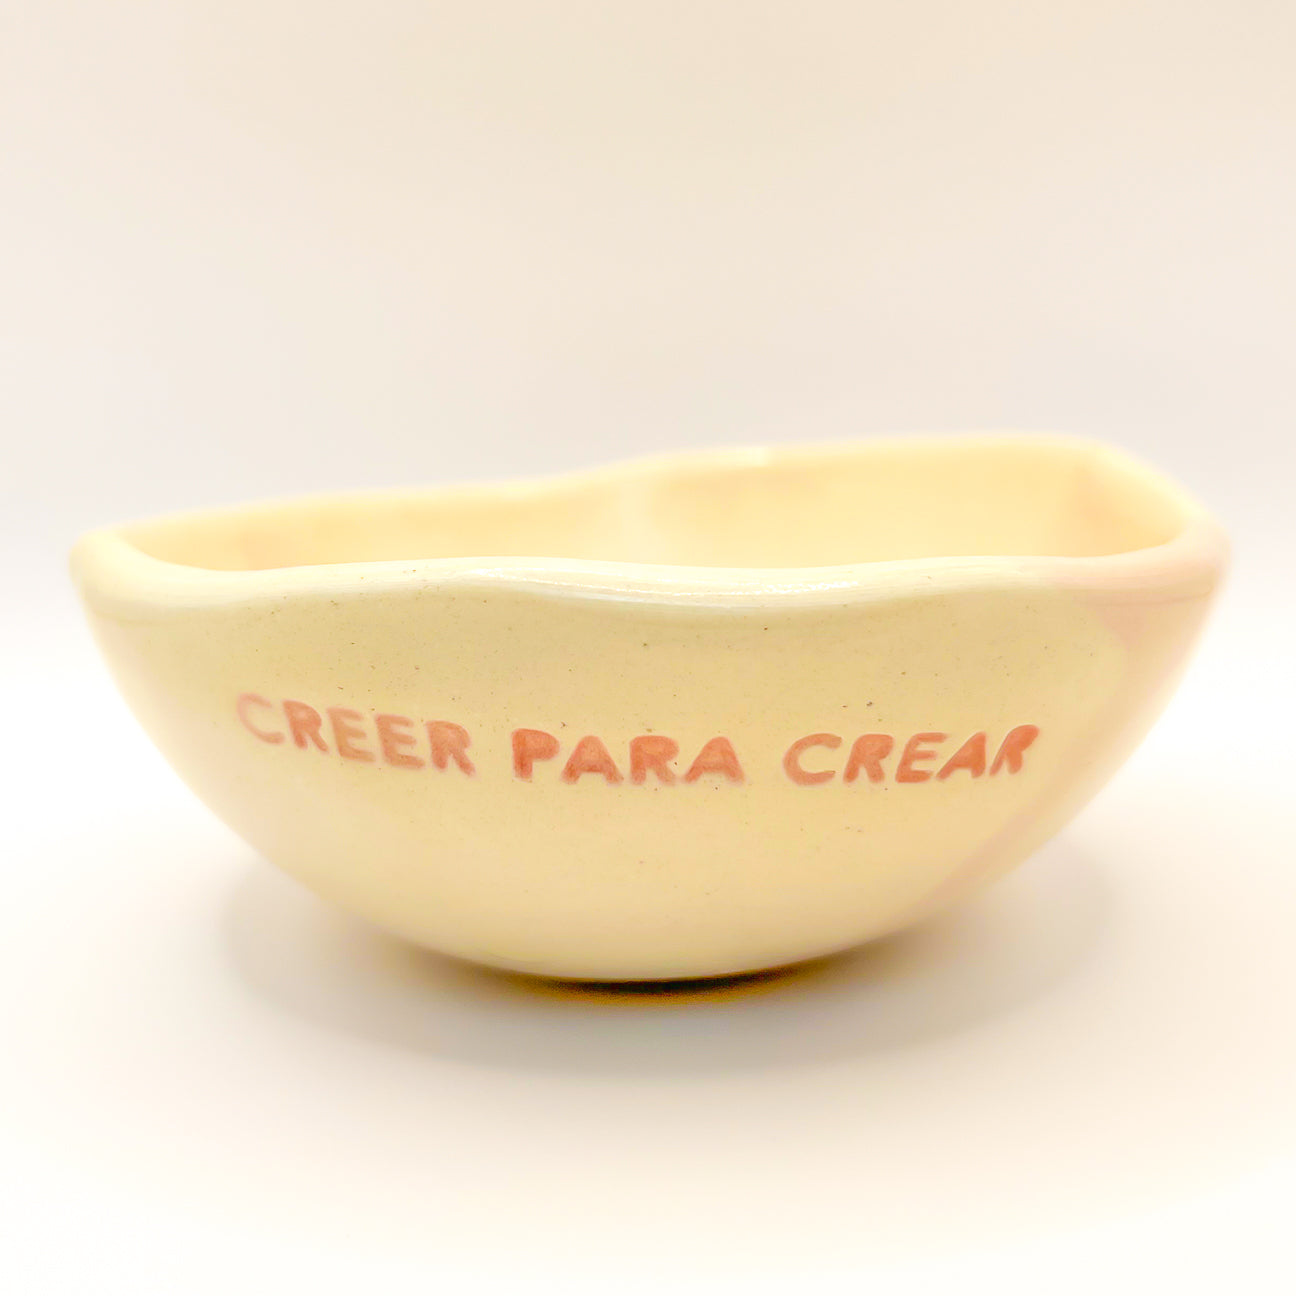 Bowl Chico - Creer para crear